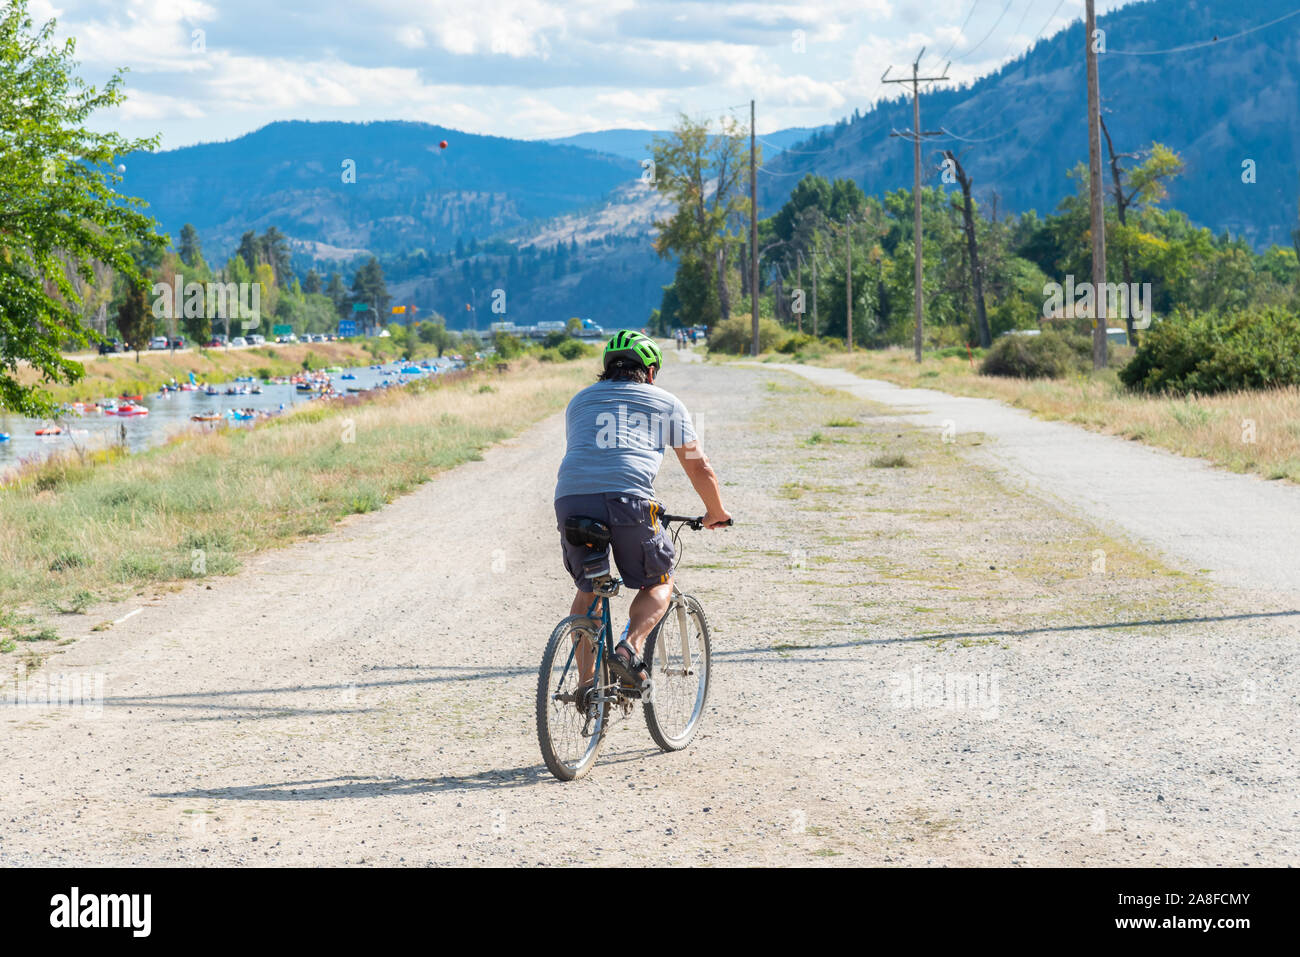 Penticton, British Columbia/Canadá - 1 de septiembre de 2019: el hombre de los paseos en bicicleta a lo largo del canal del río Penticton Trail, una ruta popular Foto de stock